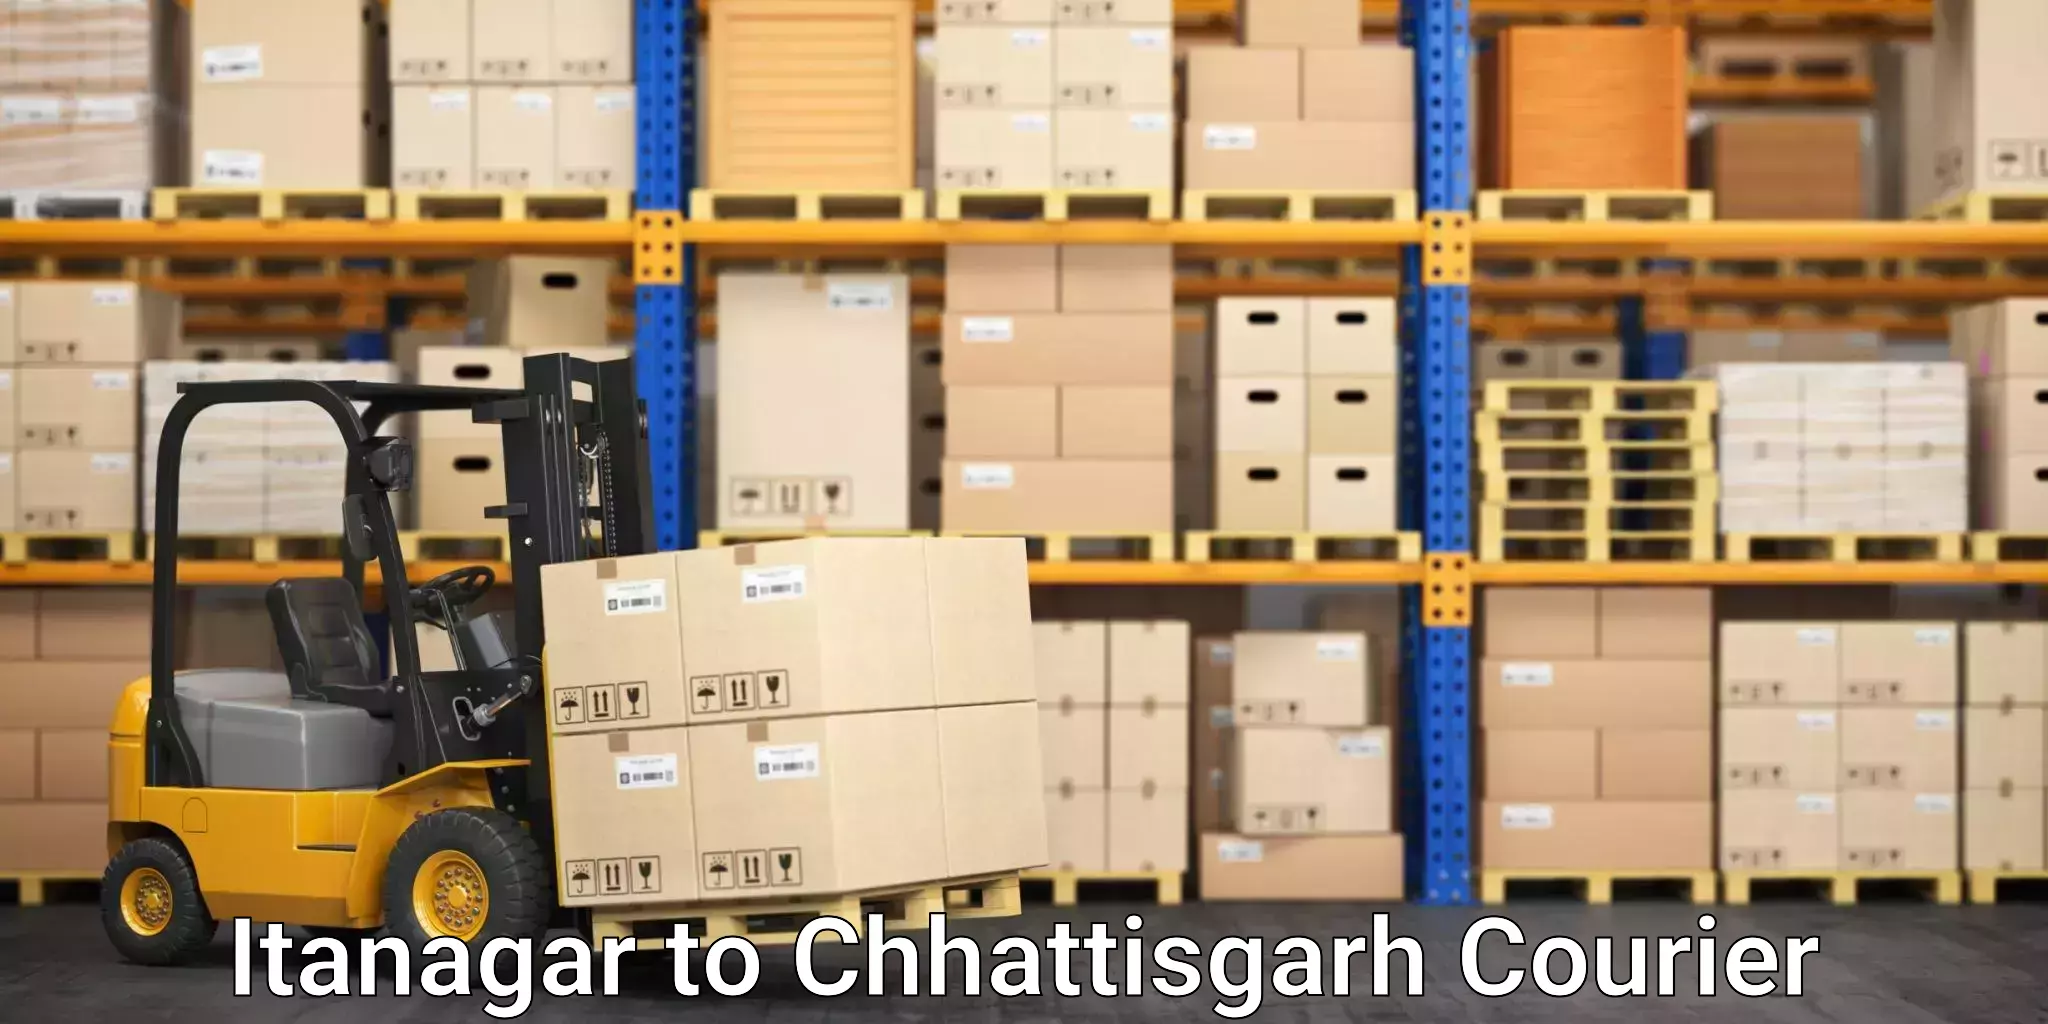 Digital courier platforms Itanagar to Bijapur Chhattisgarh